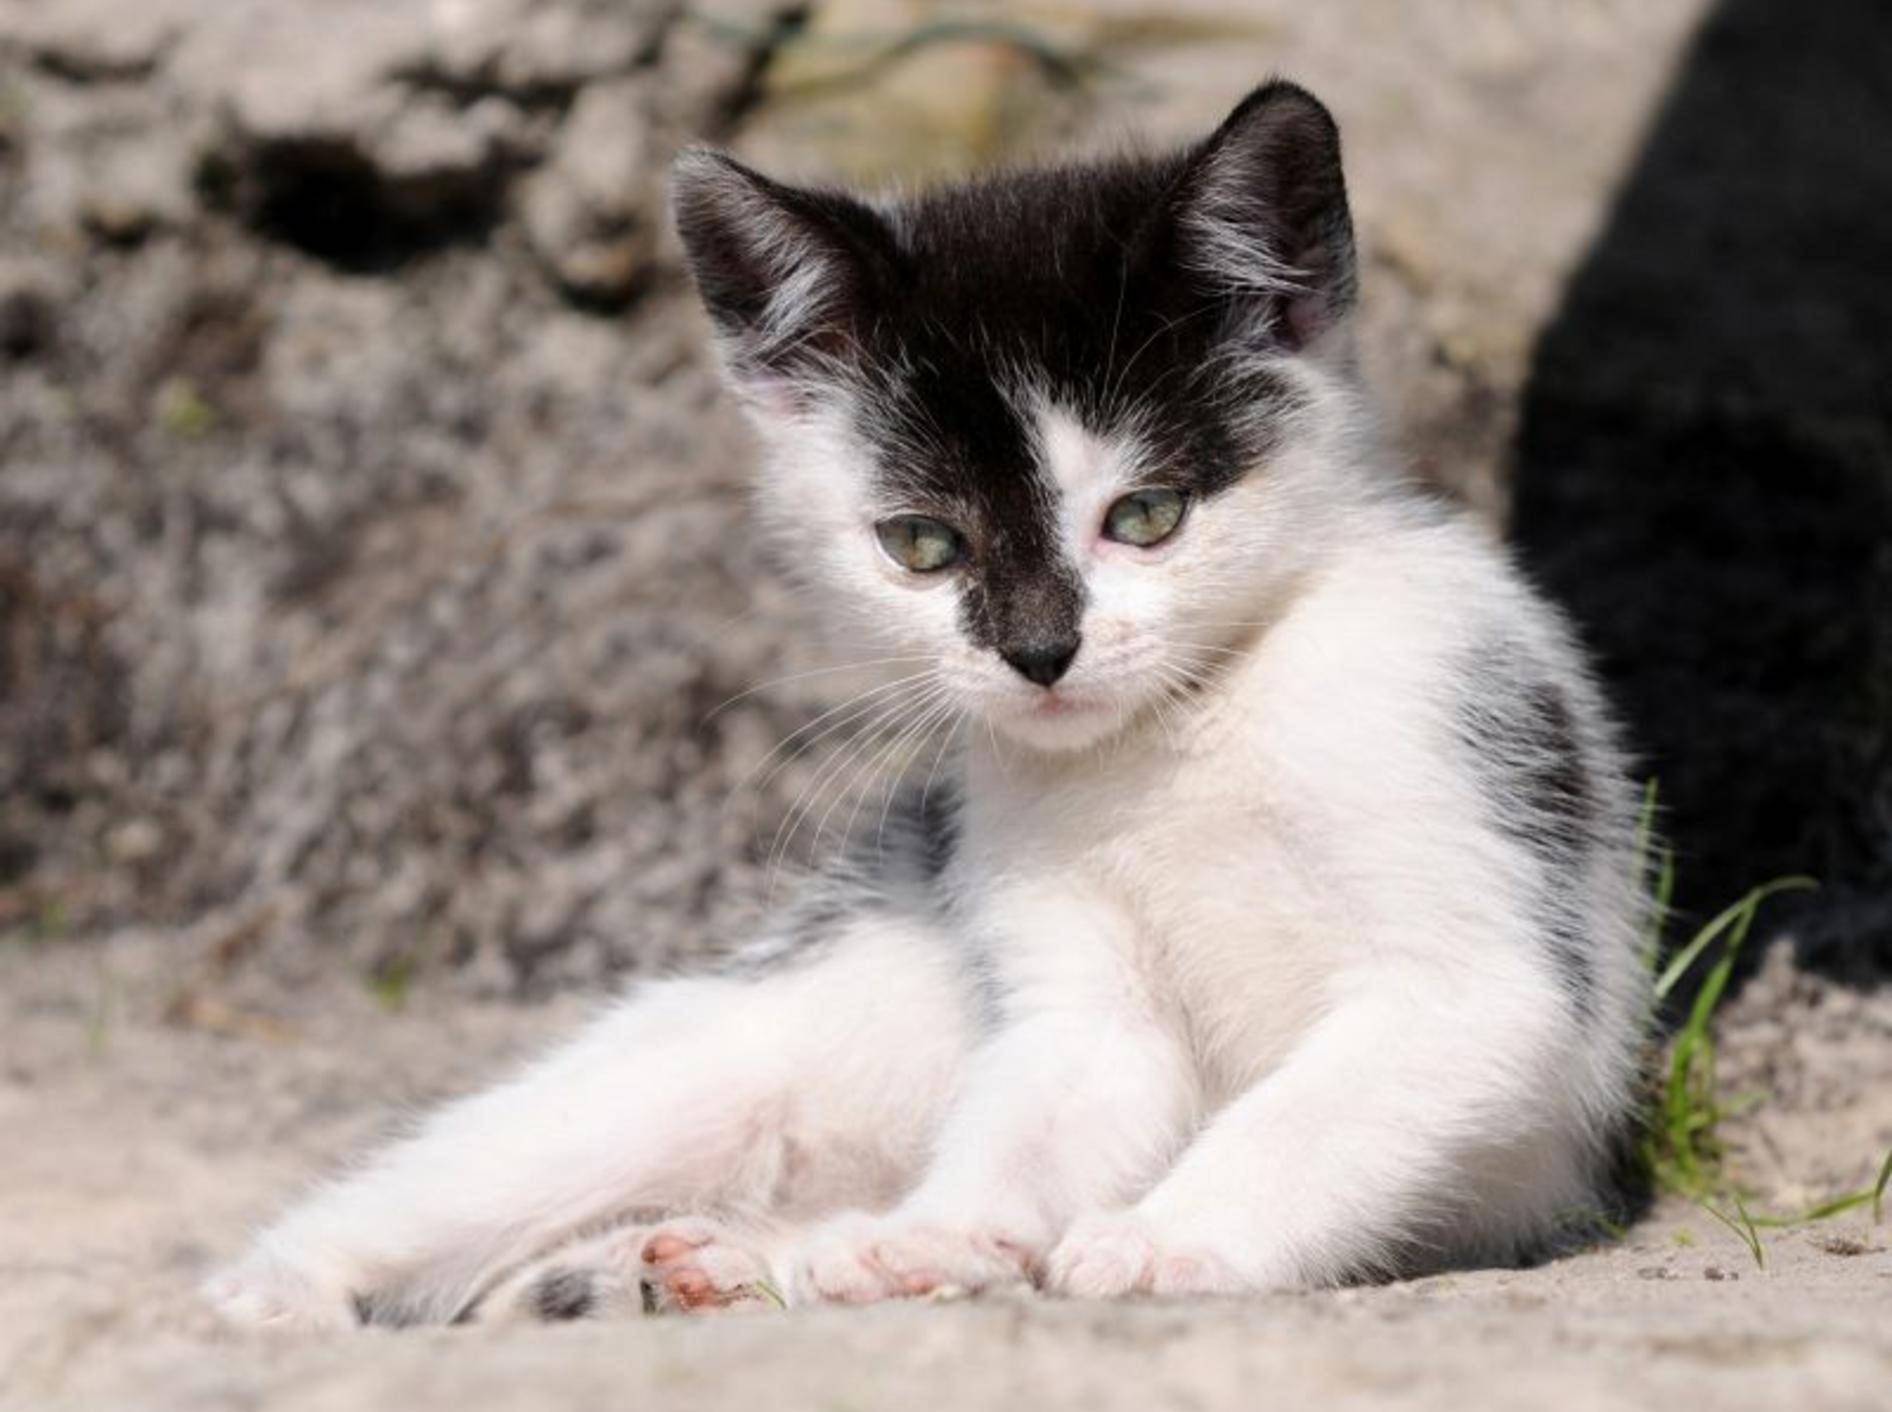 Scheckung bei Katzen Woher kommt weißes Fell?